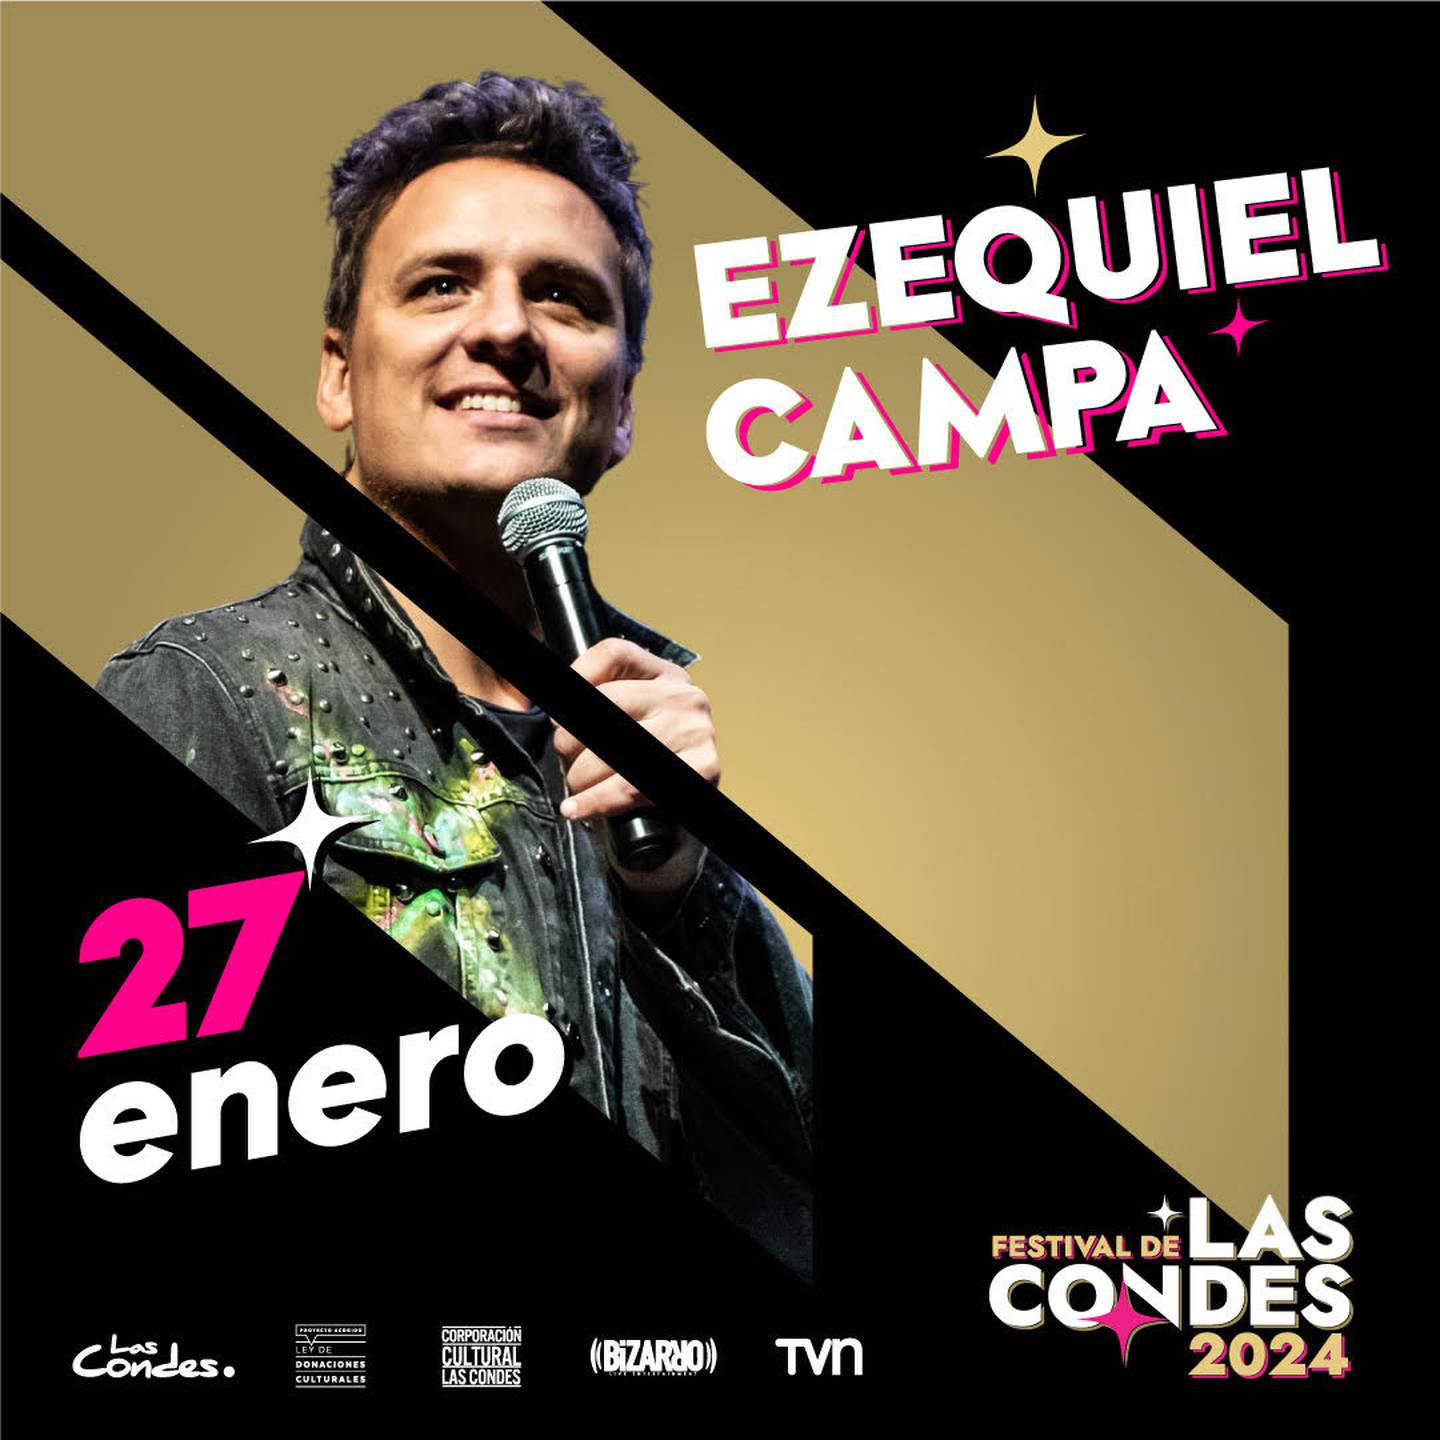 Ezequiel Campa se presentará el sábado 27 de enero en el Festival de Las Condes.